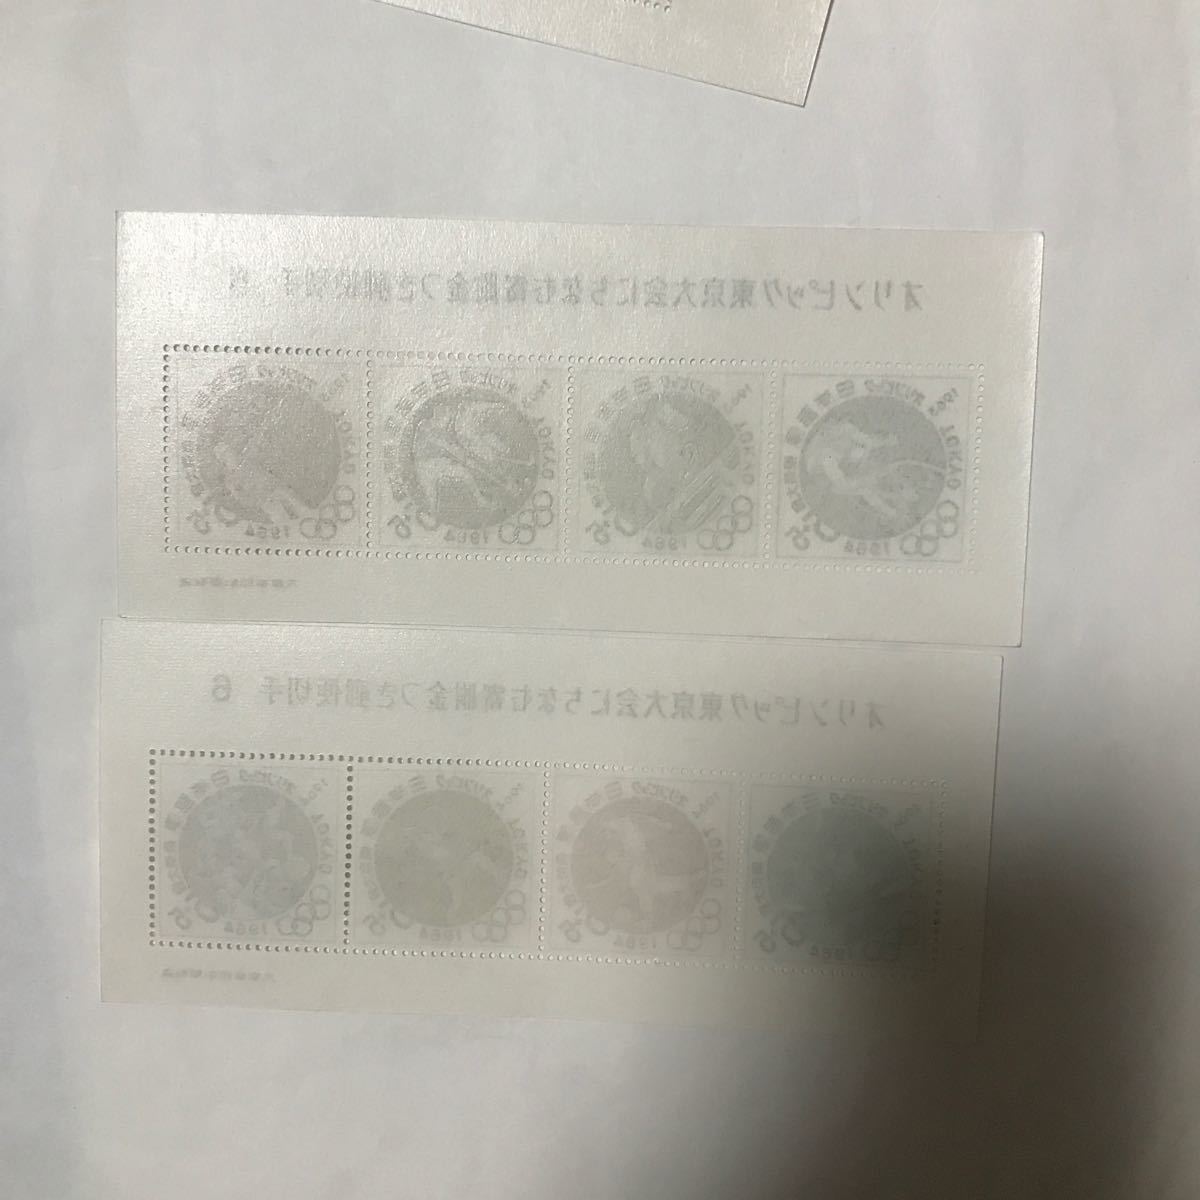 東京オリンピック切手小型シート6種6枚とバラ11枚  